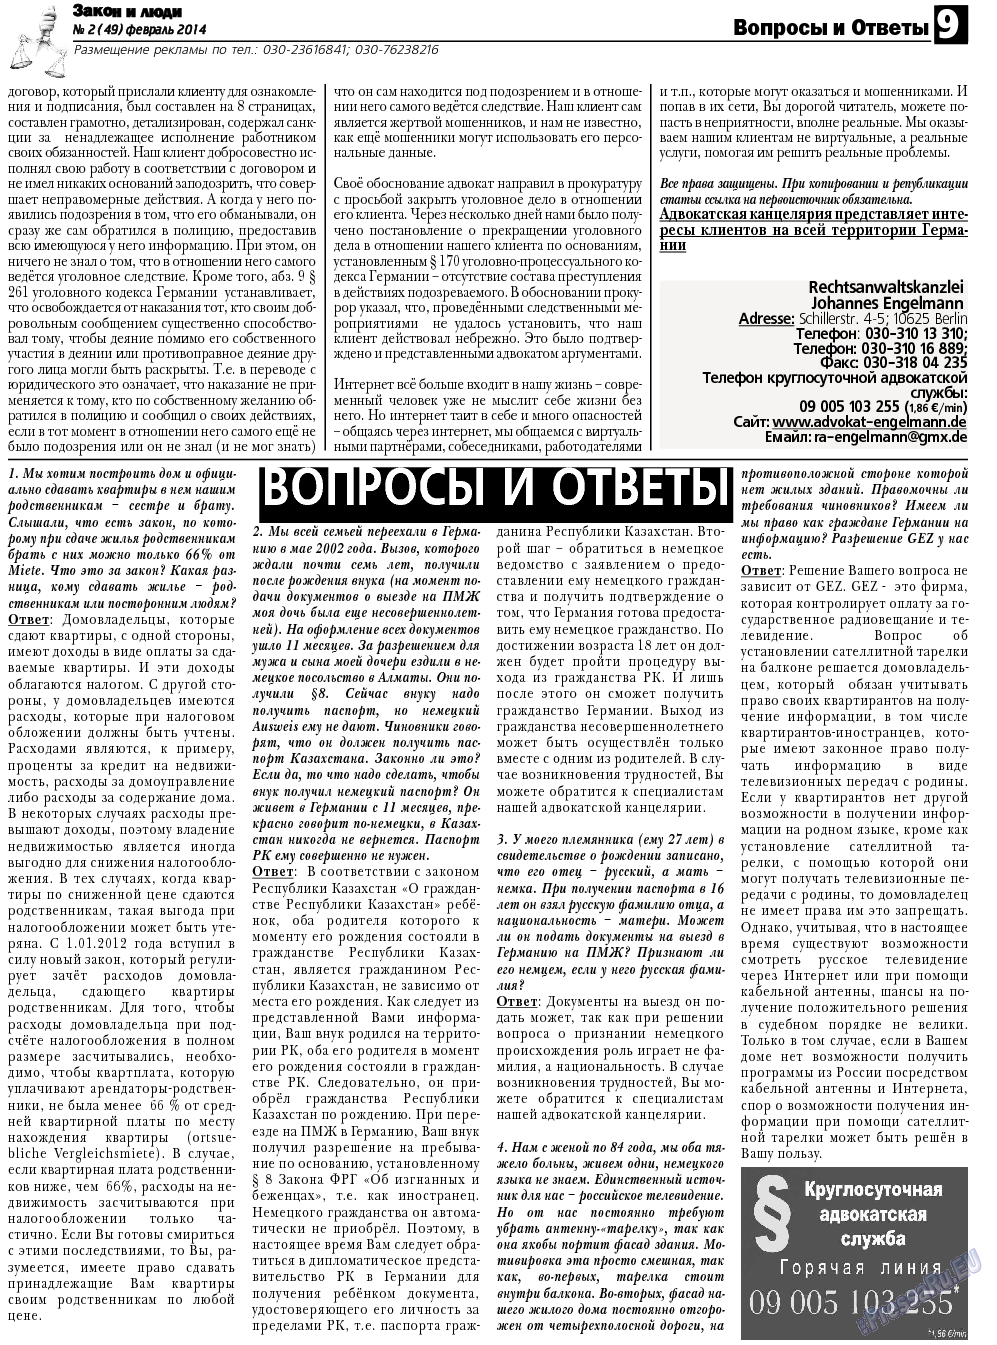 Закон и люди, газета. 2014 №2 стр.9